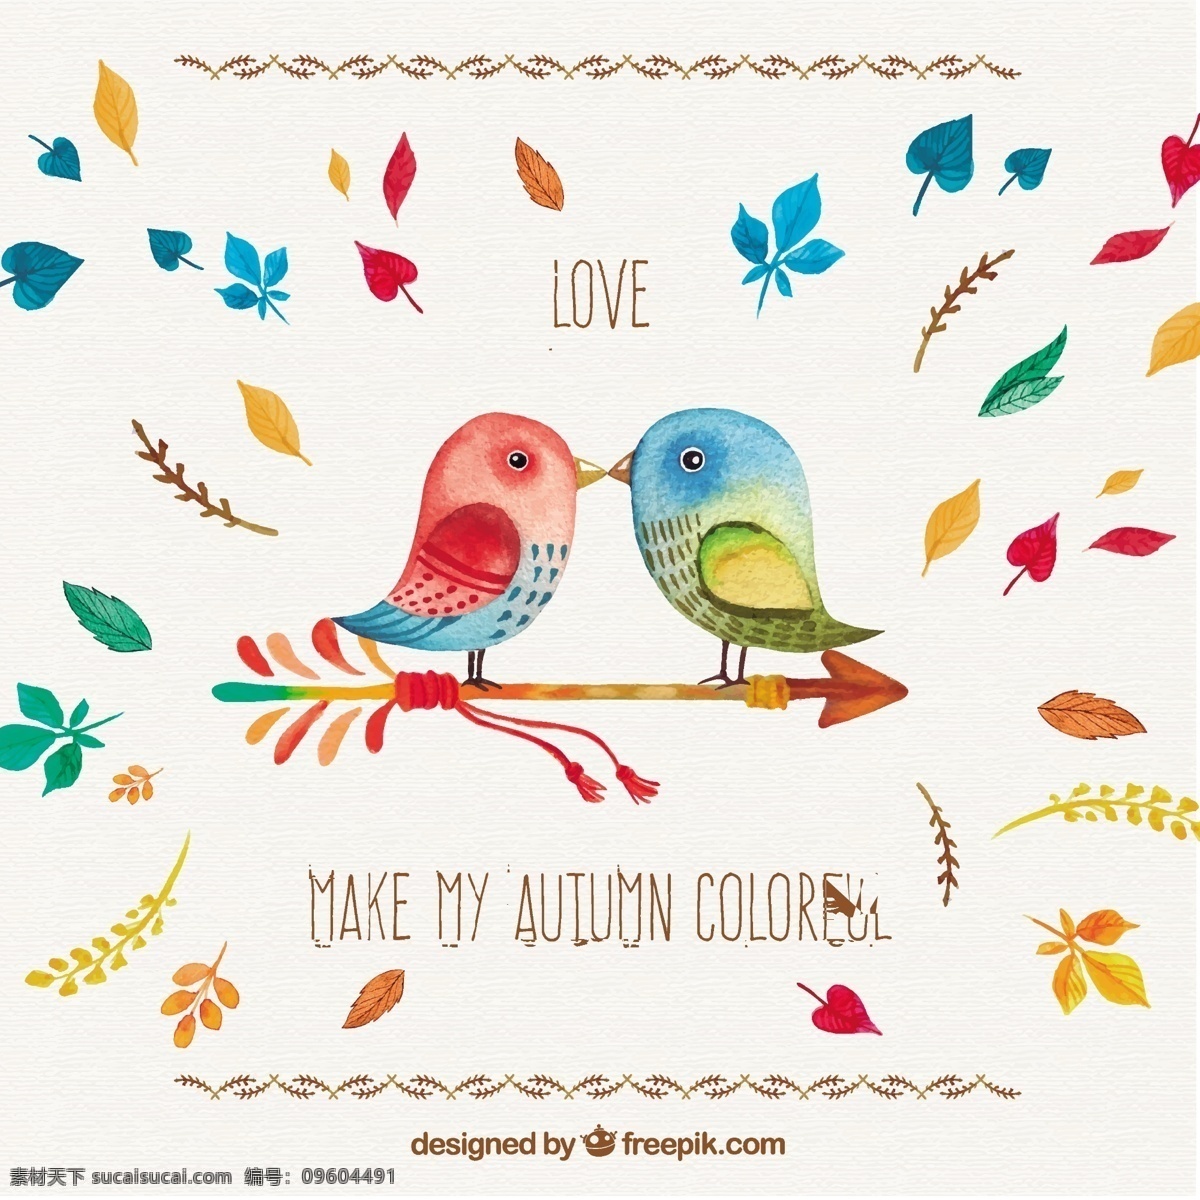 手 画 浪漫 秋季 卡 爱 水彩画 鸟 自然 叶 秋 油漆 树叶 鸟类 爱鸟 秋季叶 季节 手画 白色